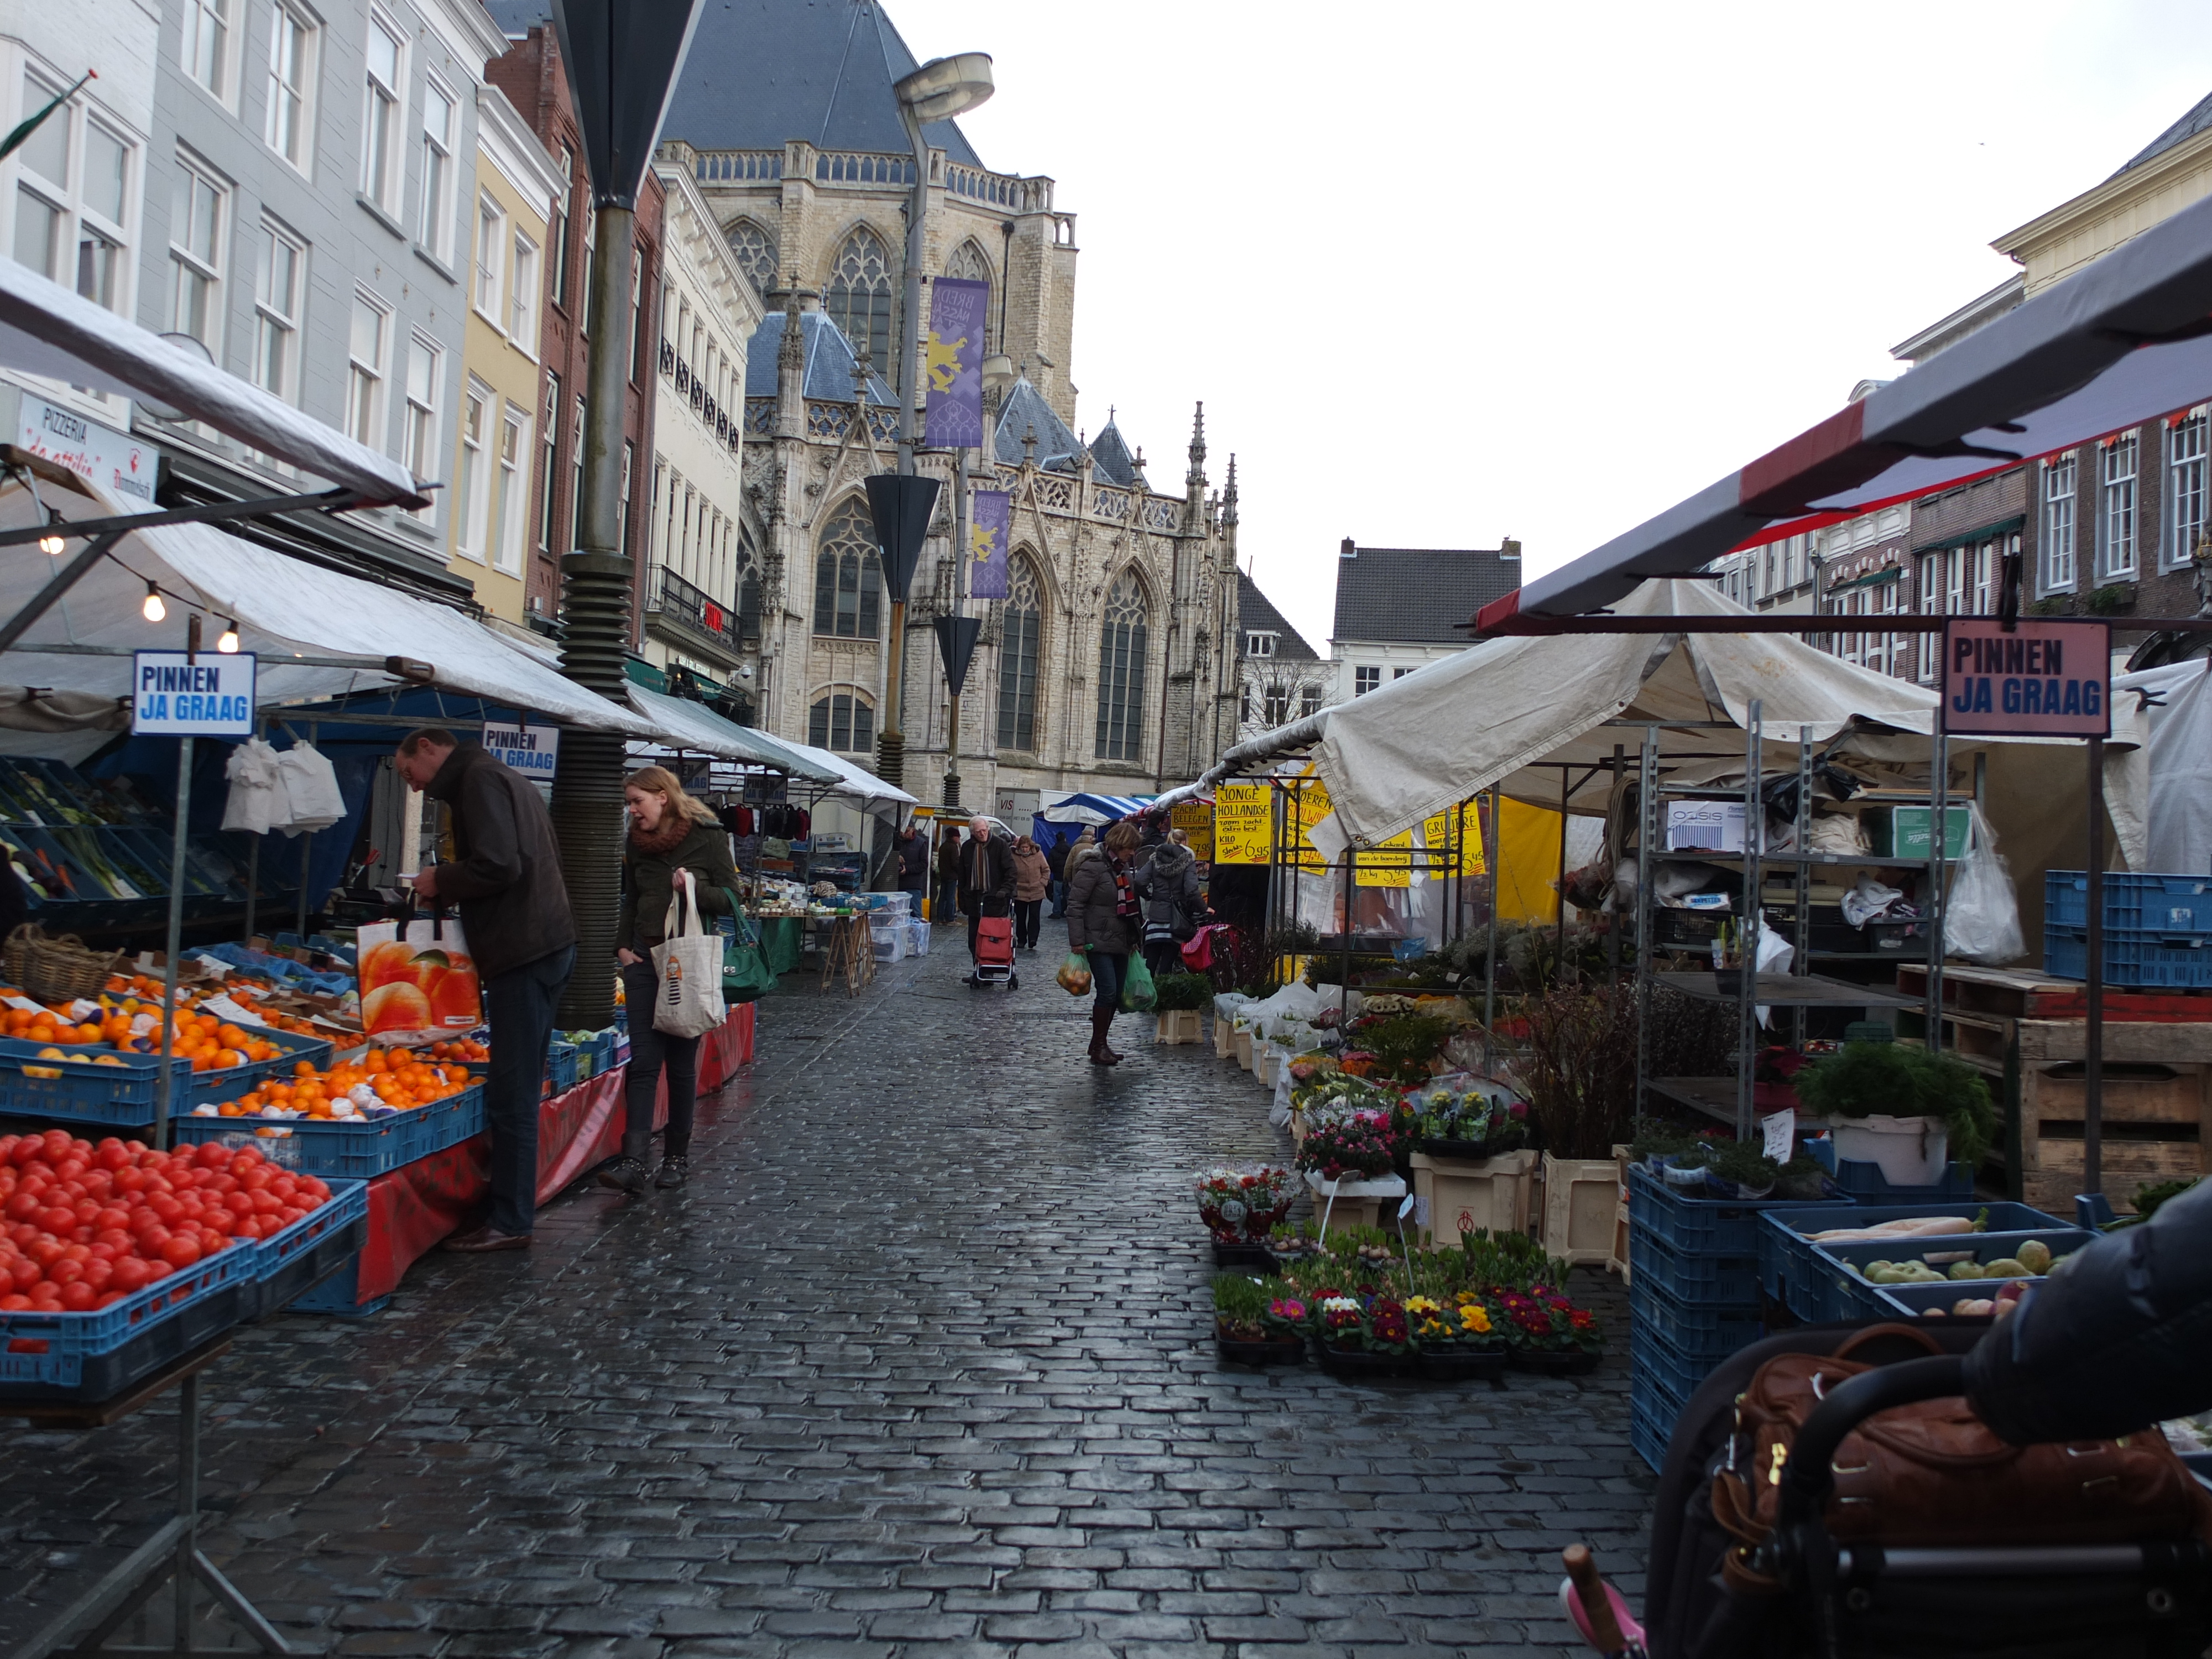 artikel ik betwijfel het Rondlopen File:Weekmarkt Grote Markt Breda DSCF5536.JPG - Wikimedia Commons